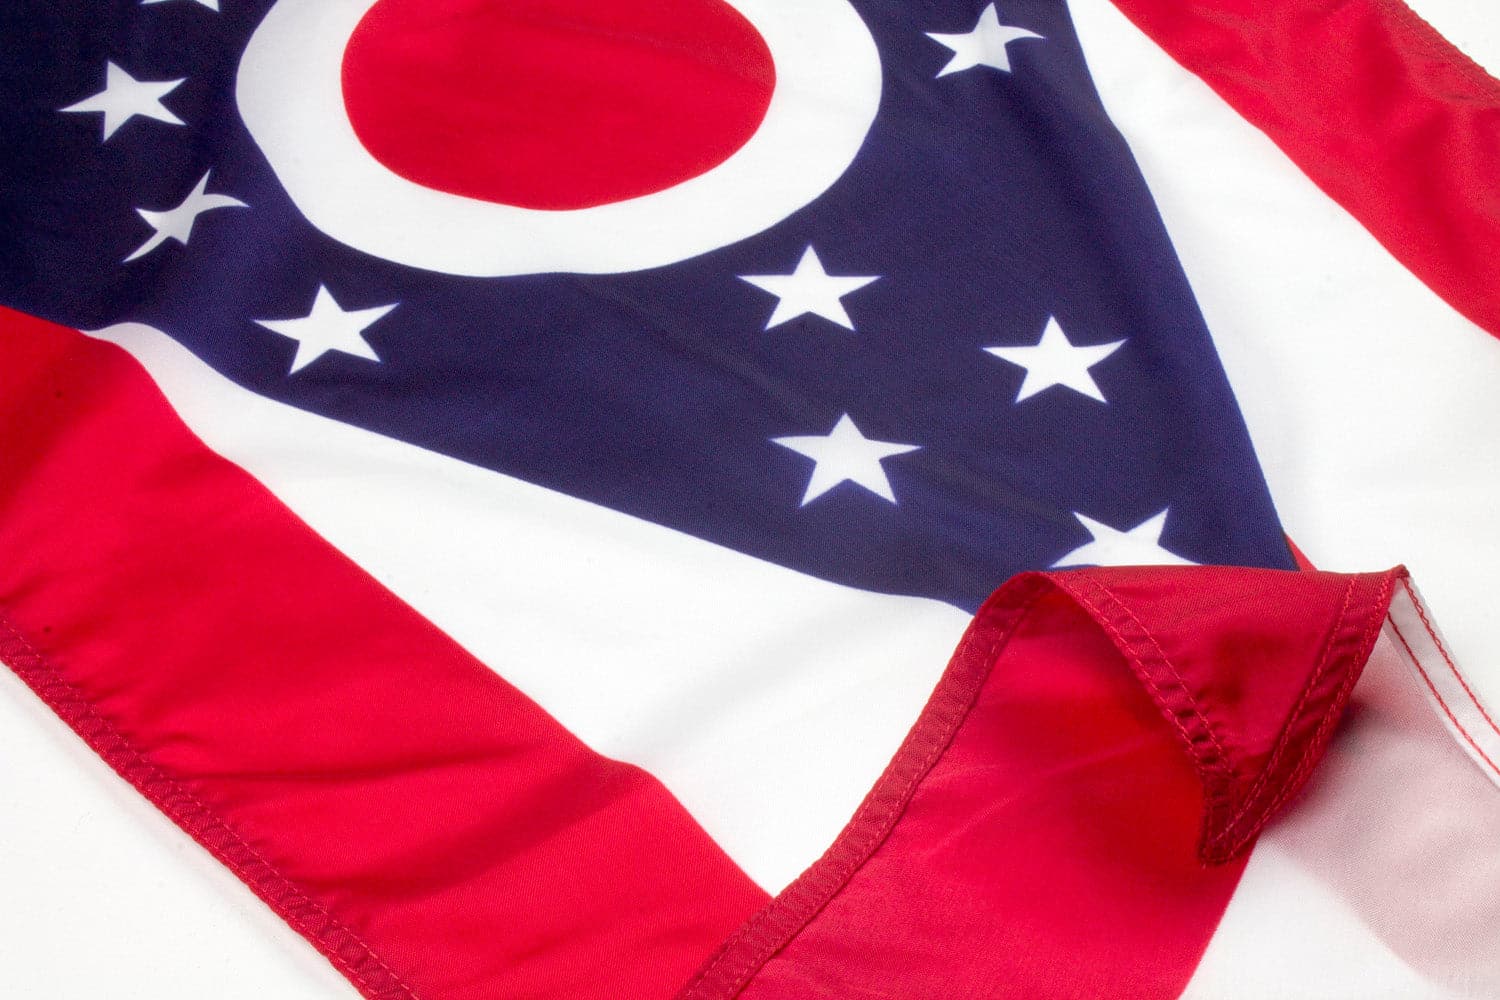 Flag Of Ohio's Code & Price - RblxTrade